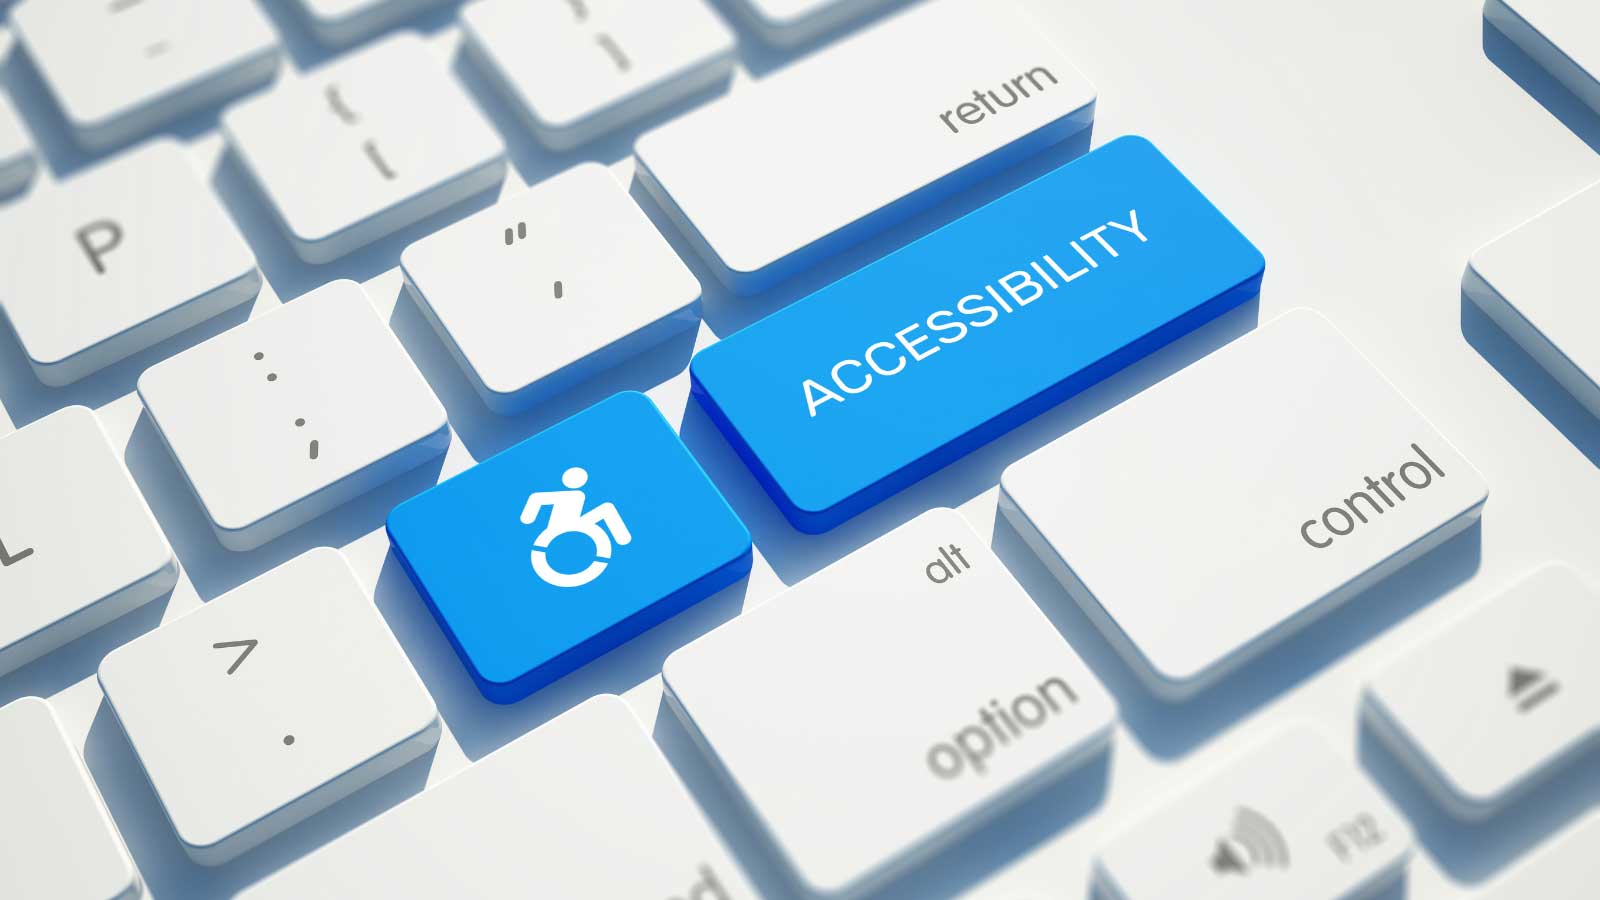 EU web accessibility